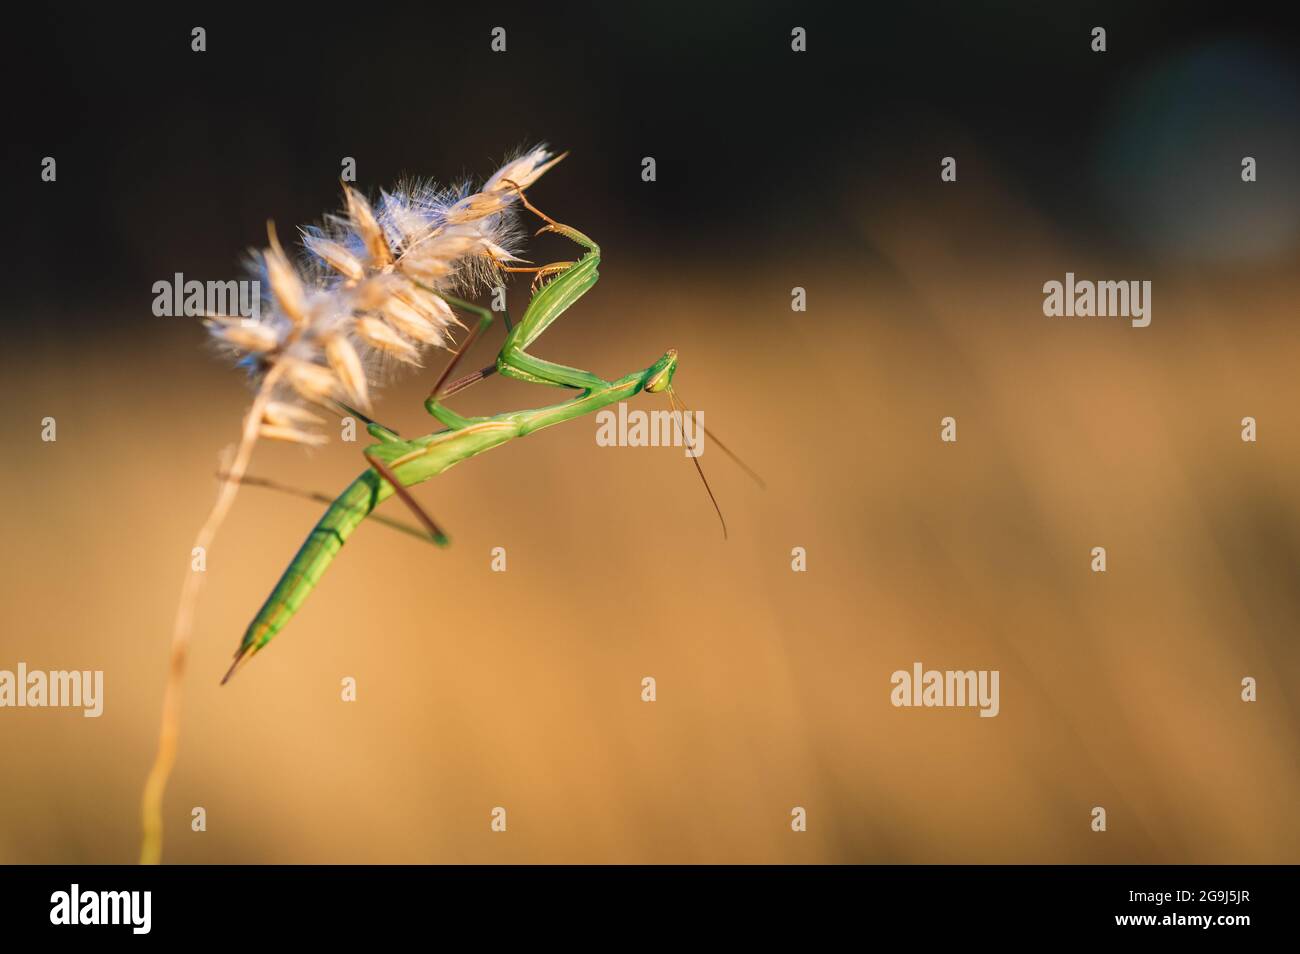 Une nymphe de la mante européenne (Mantis religiosa) sur une herbe dans un habitat naturel. Une nymphe d'une mantis, animal femelle. Heure d'or, coucher de soleil en arrière-plan. Banque D'Images